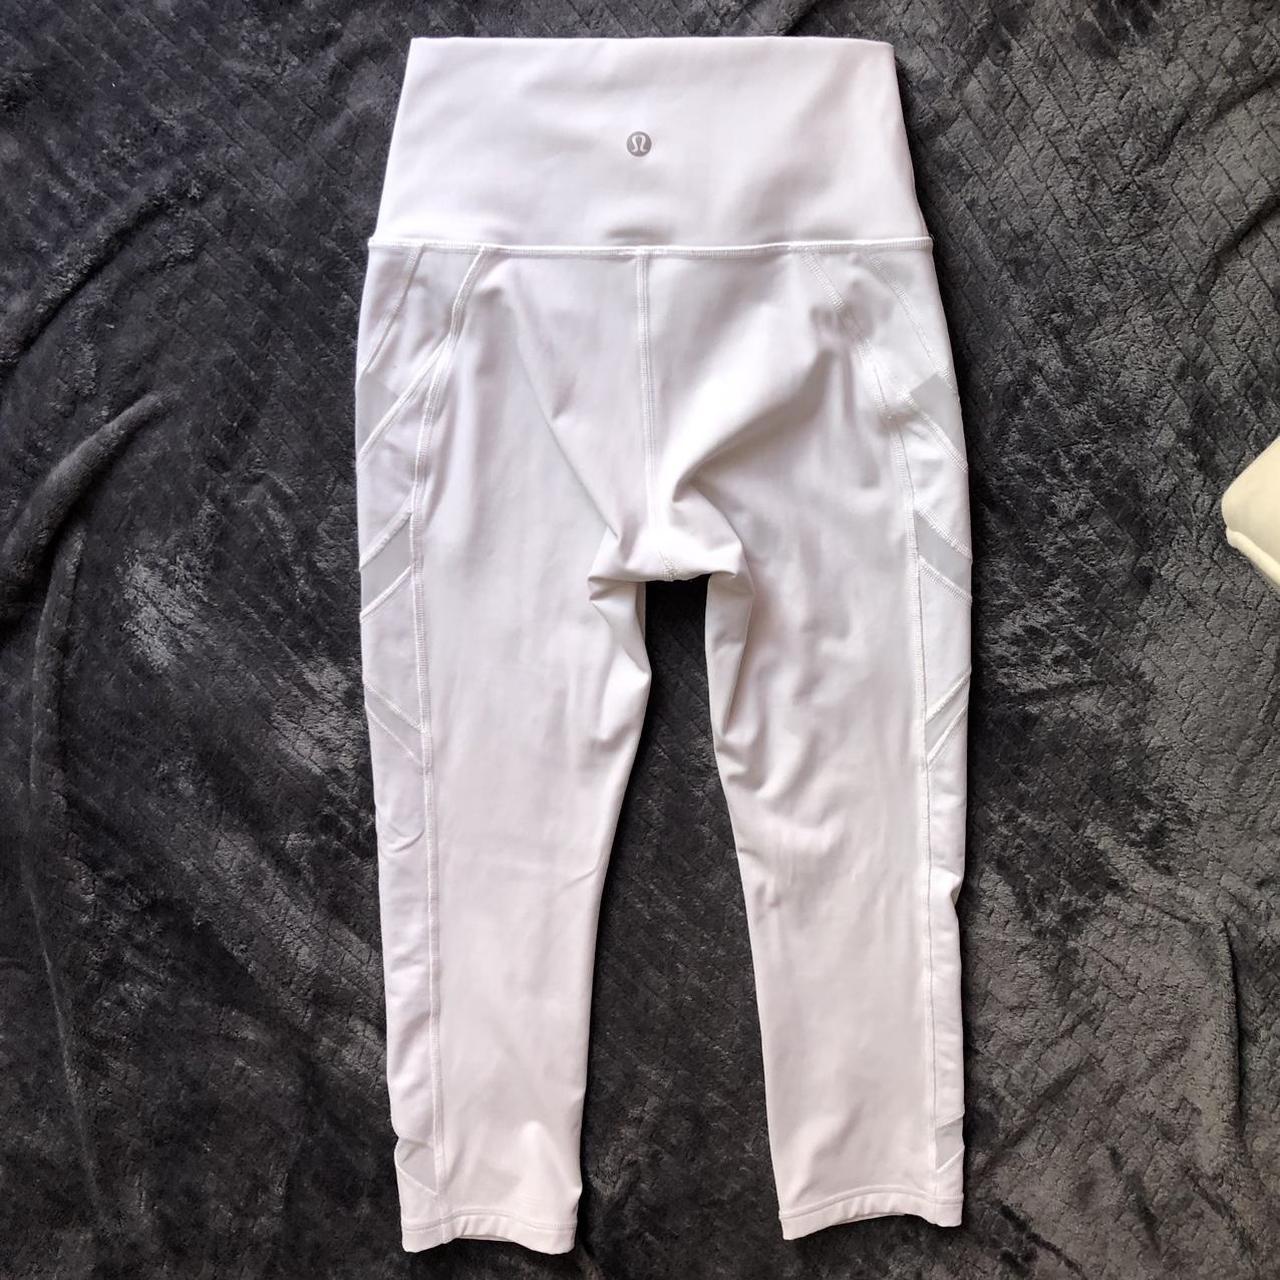 lululemon white capri leggings w mesh cut out - Depop